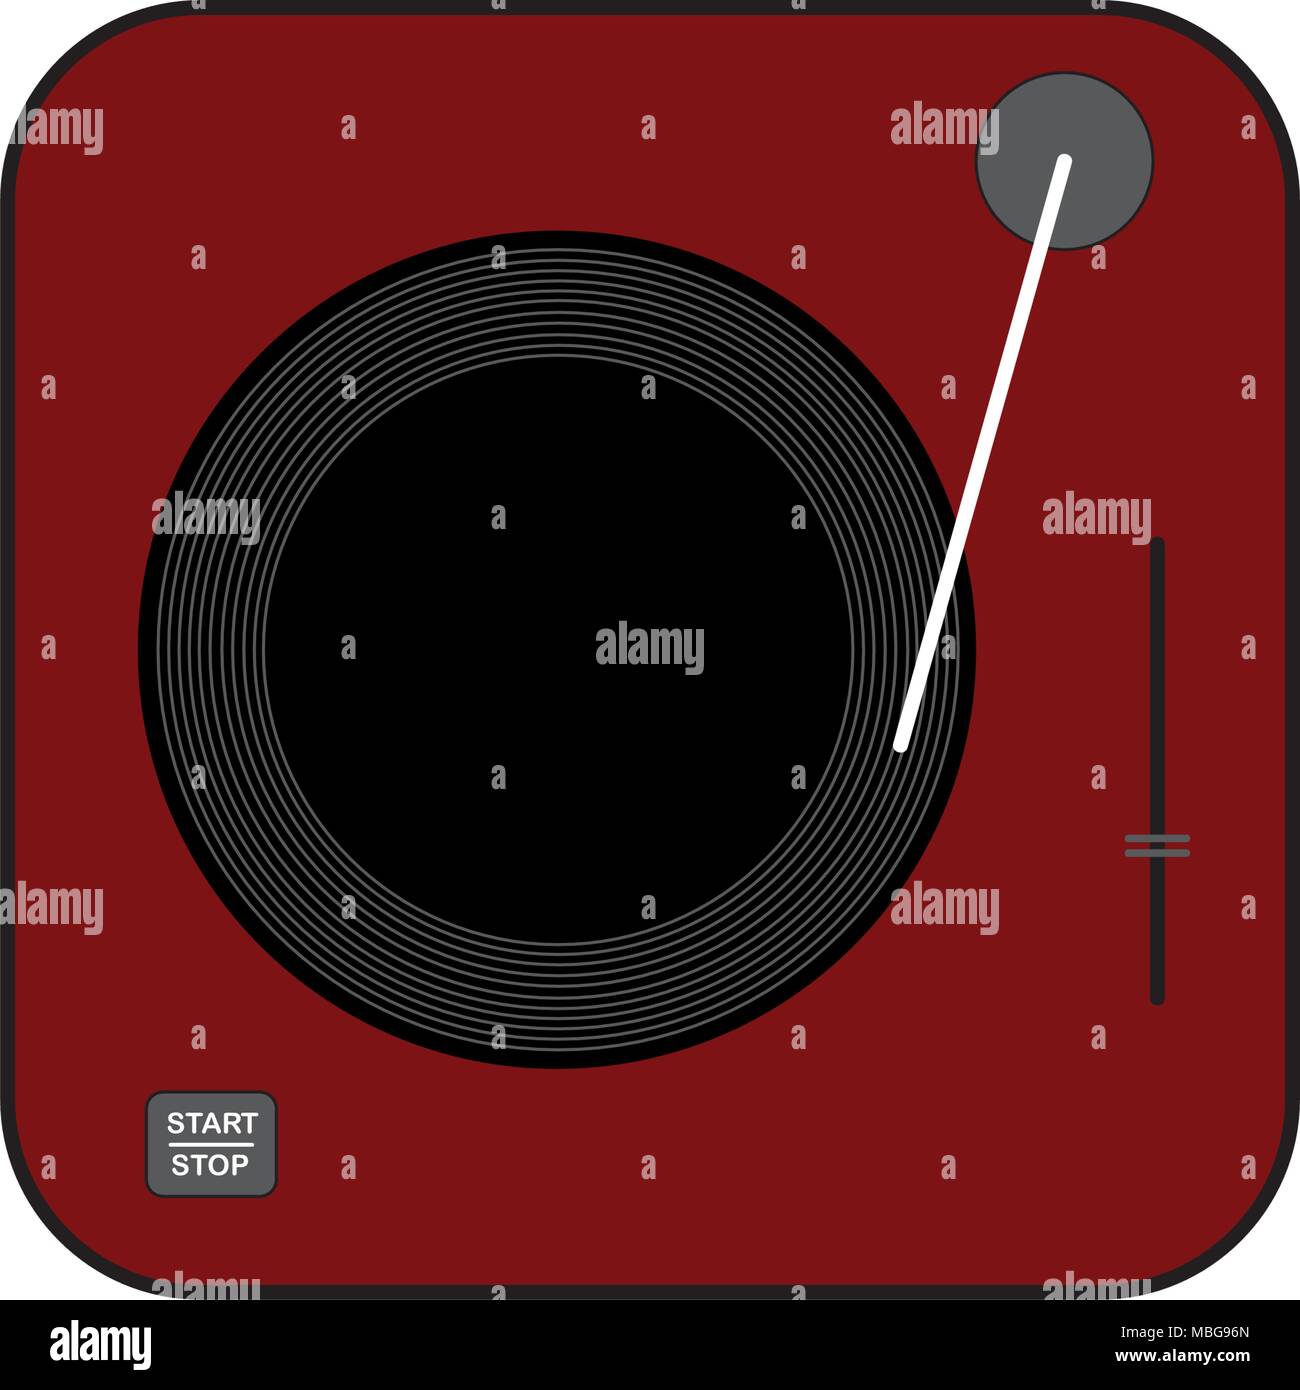 L'icône de la platine vinyle rouge foncé. Style plat dessin vectoriel. Gramophone rouge foncé. Illustration de Vecteur